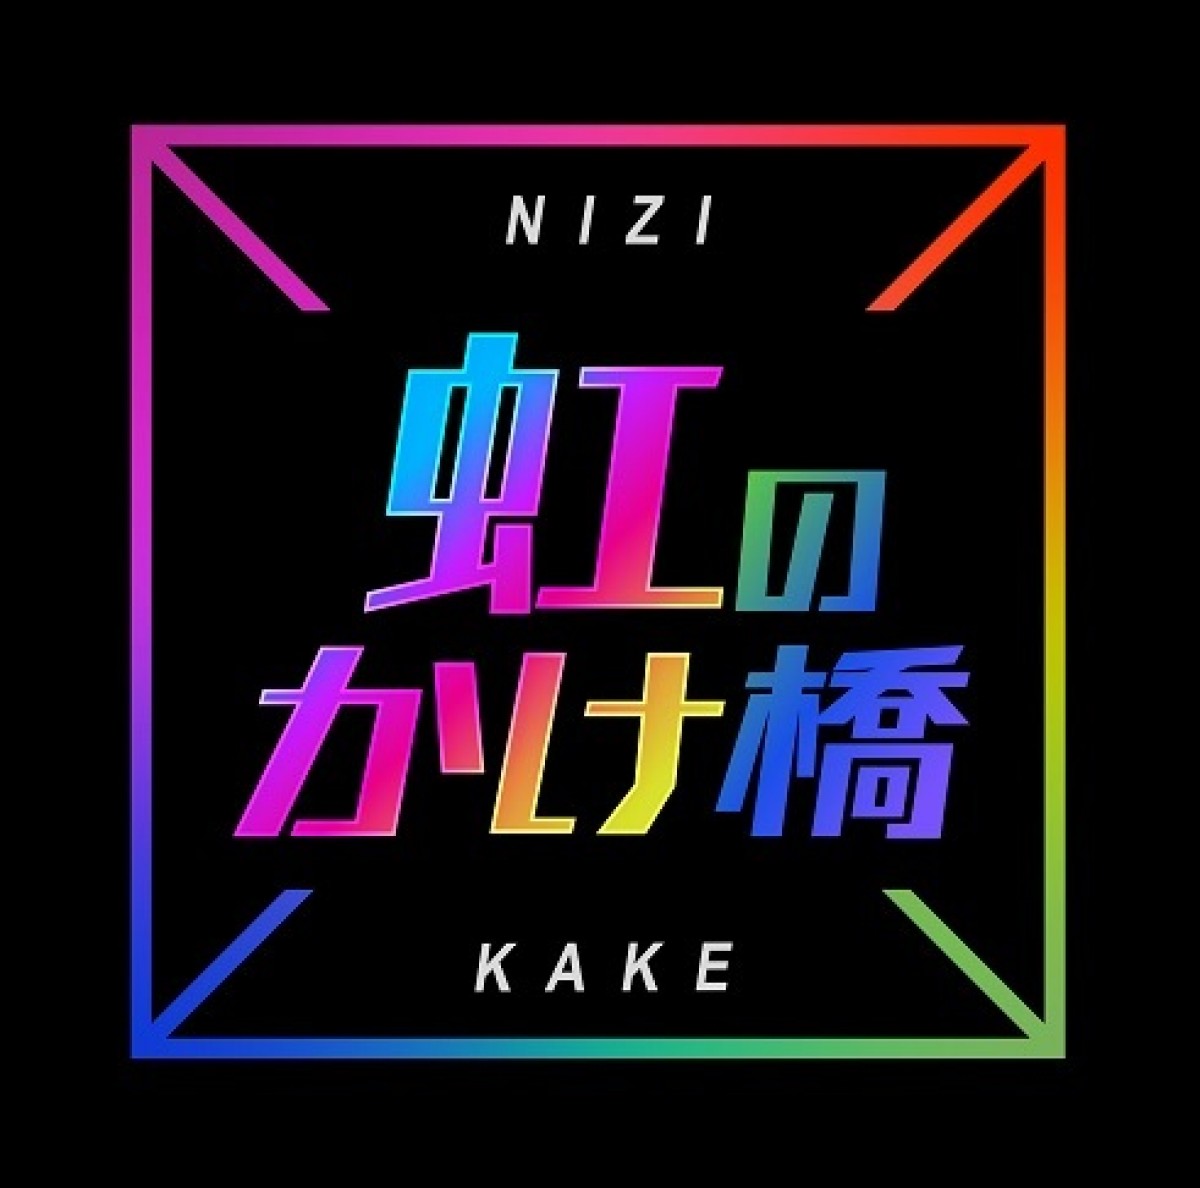 「Nizi Project」デビューメンバー決定までのサバイバル合宿に密着 『虹のかけ橋』地上波放送決定